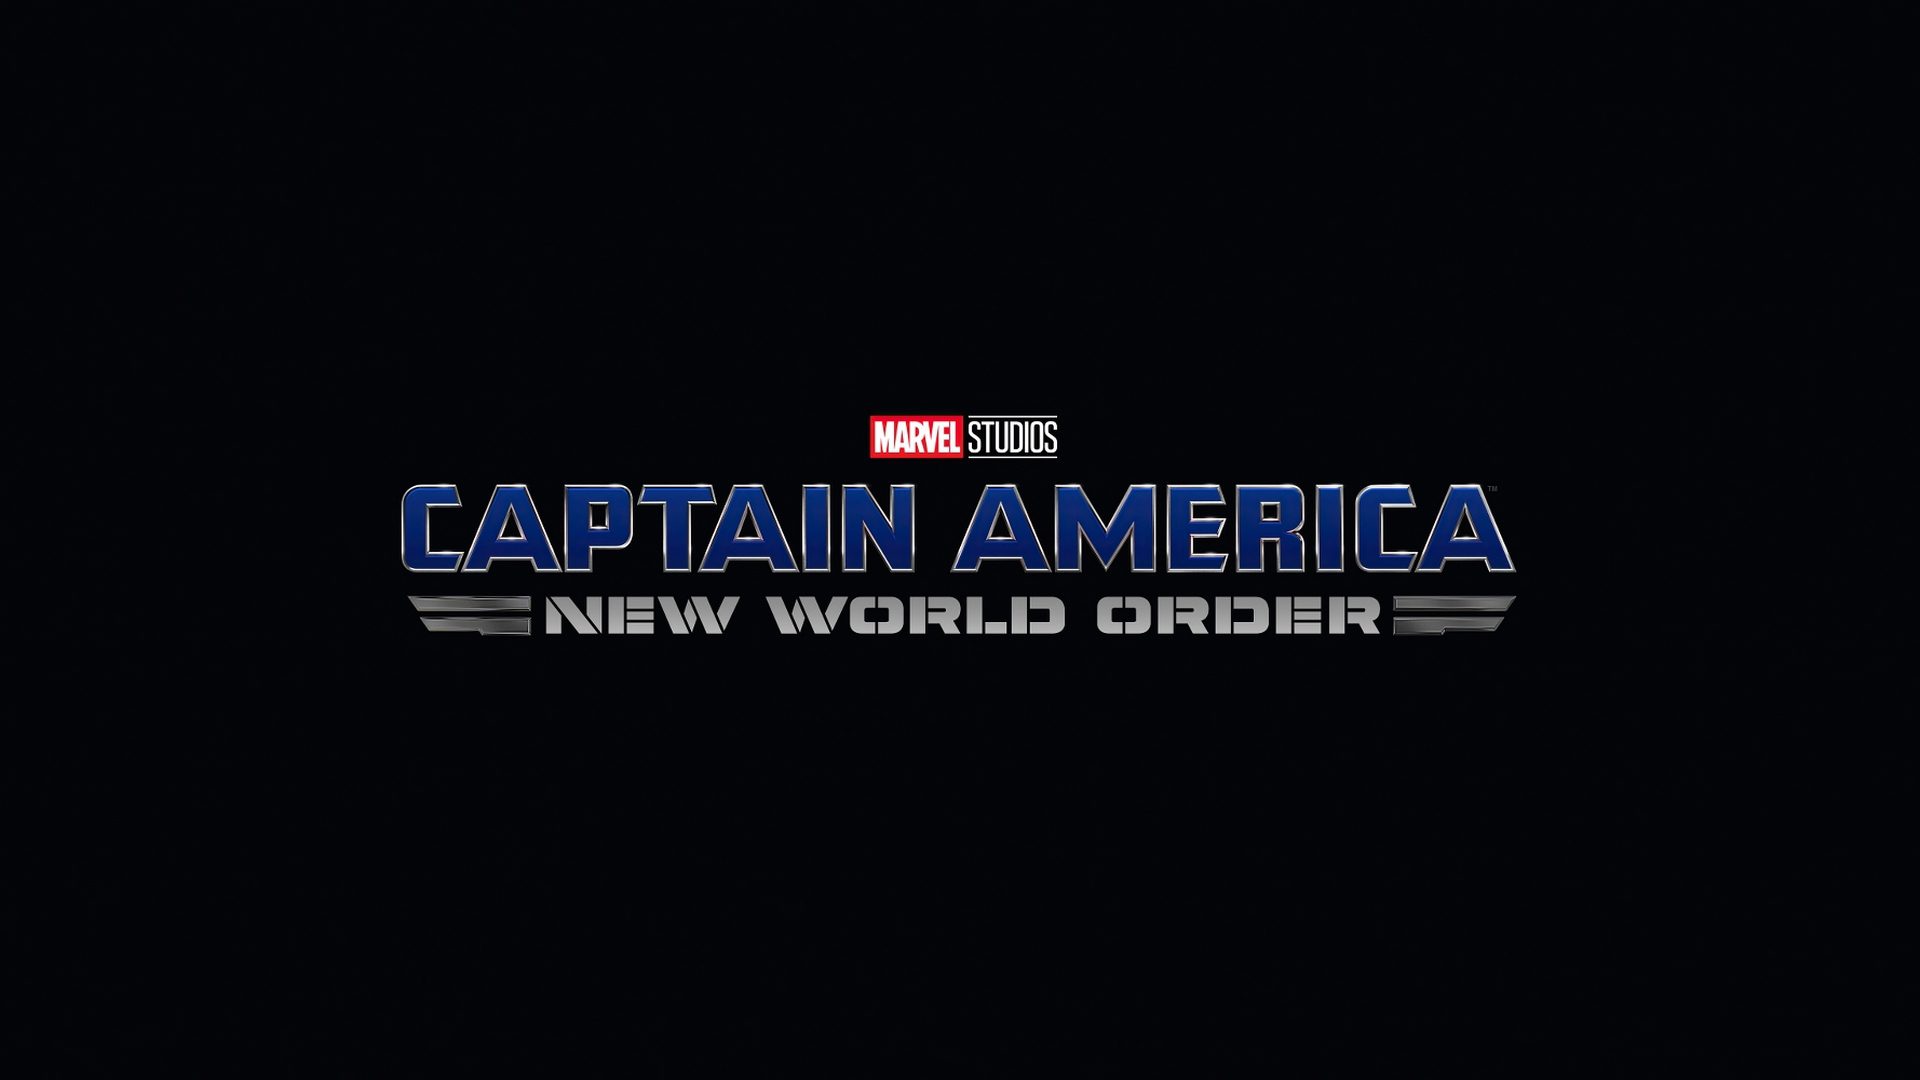 داستان فیلم کاپیتان آمریکا 4 - Captain America 4